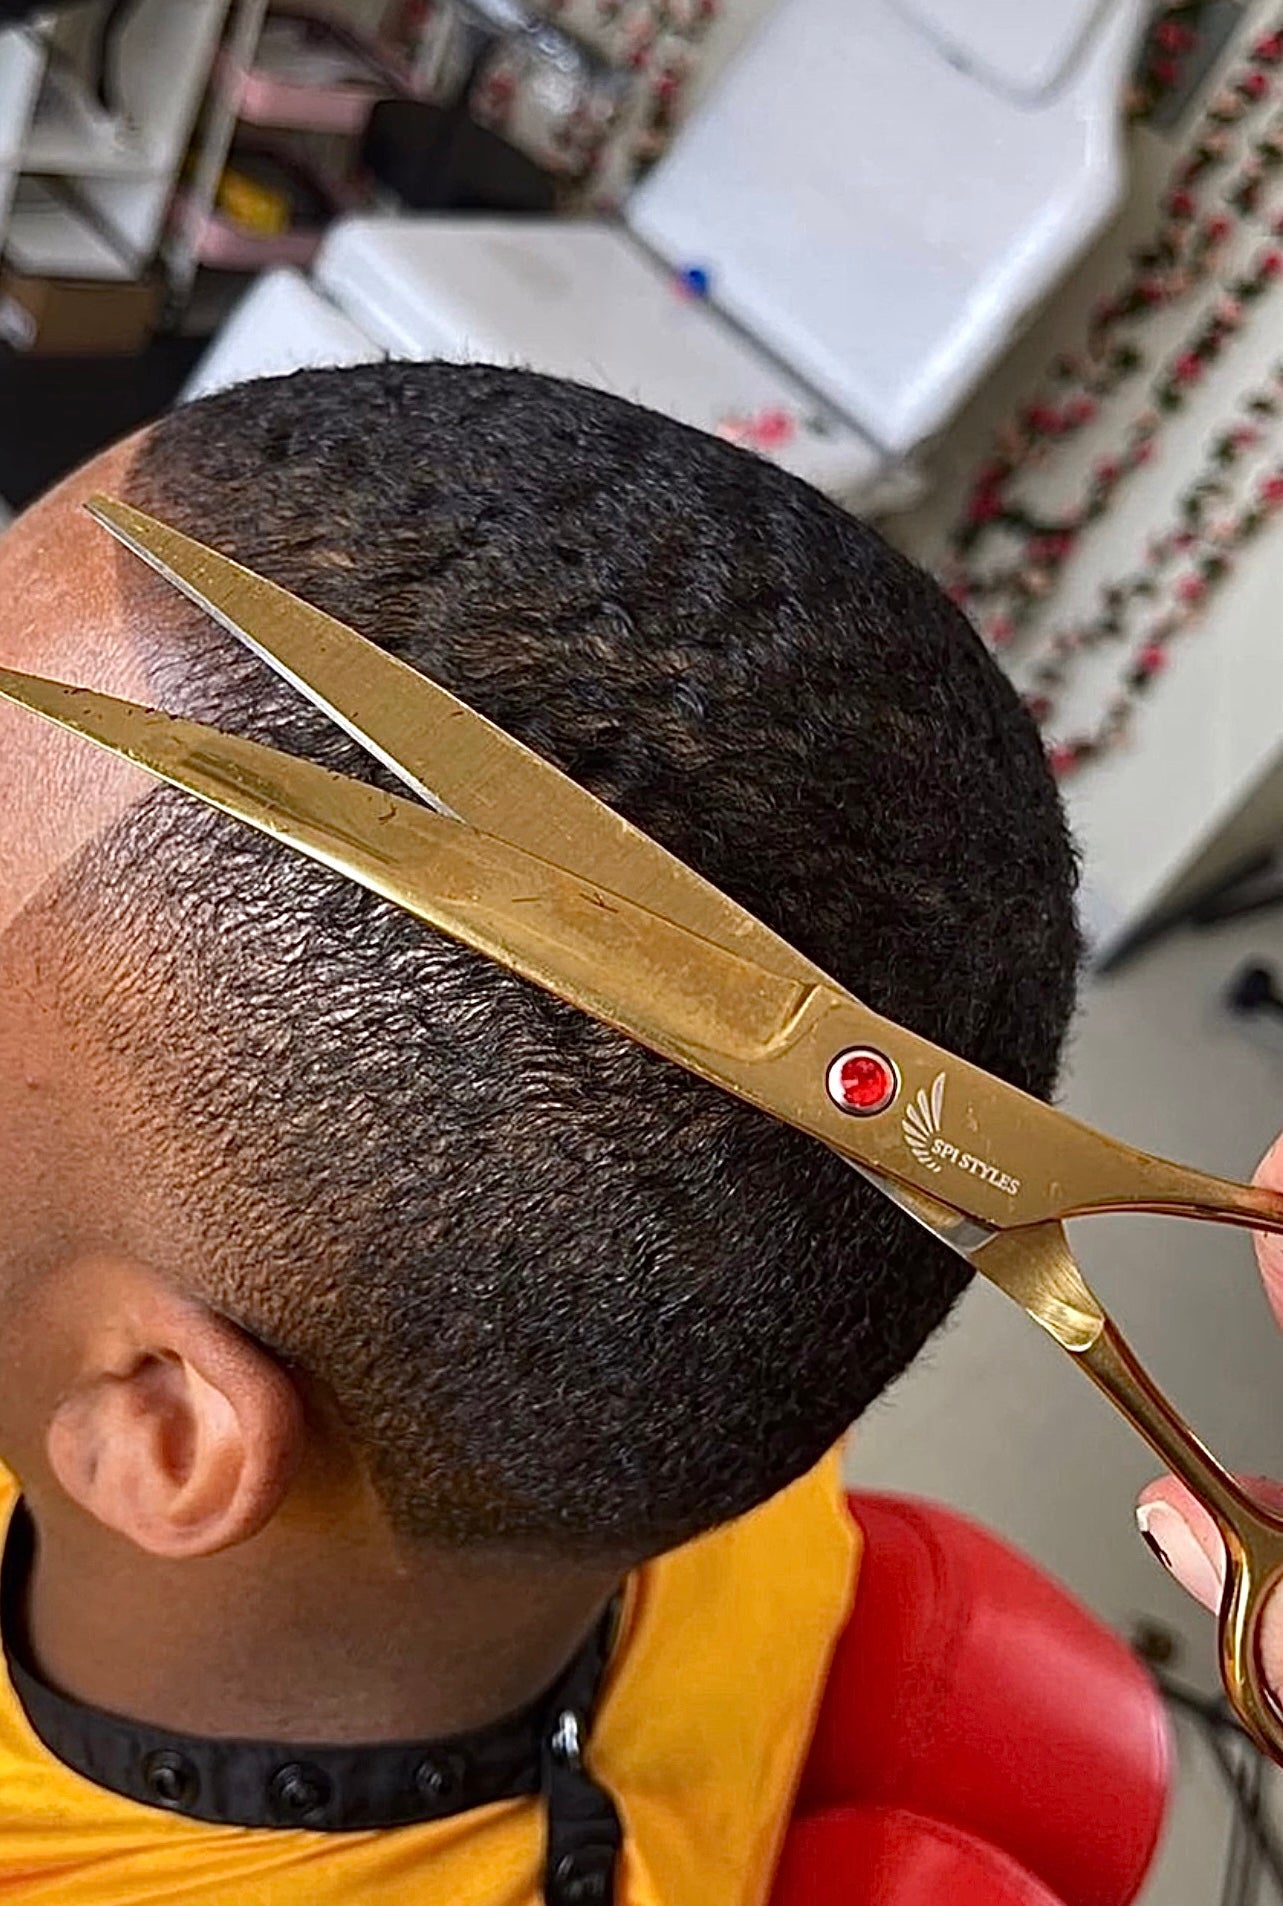 Master Barber & Salon Curved Gold Scissors – SPI Styles